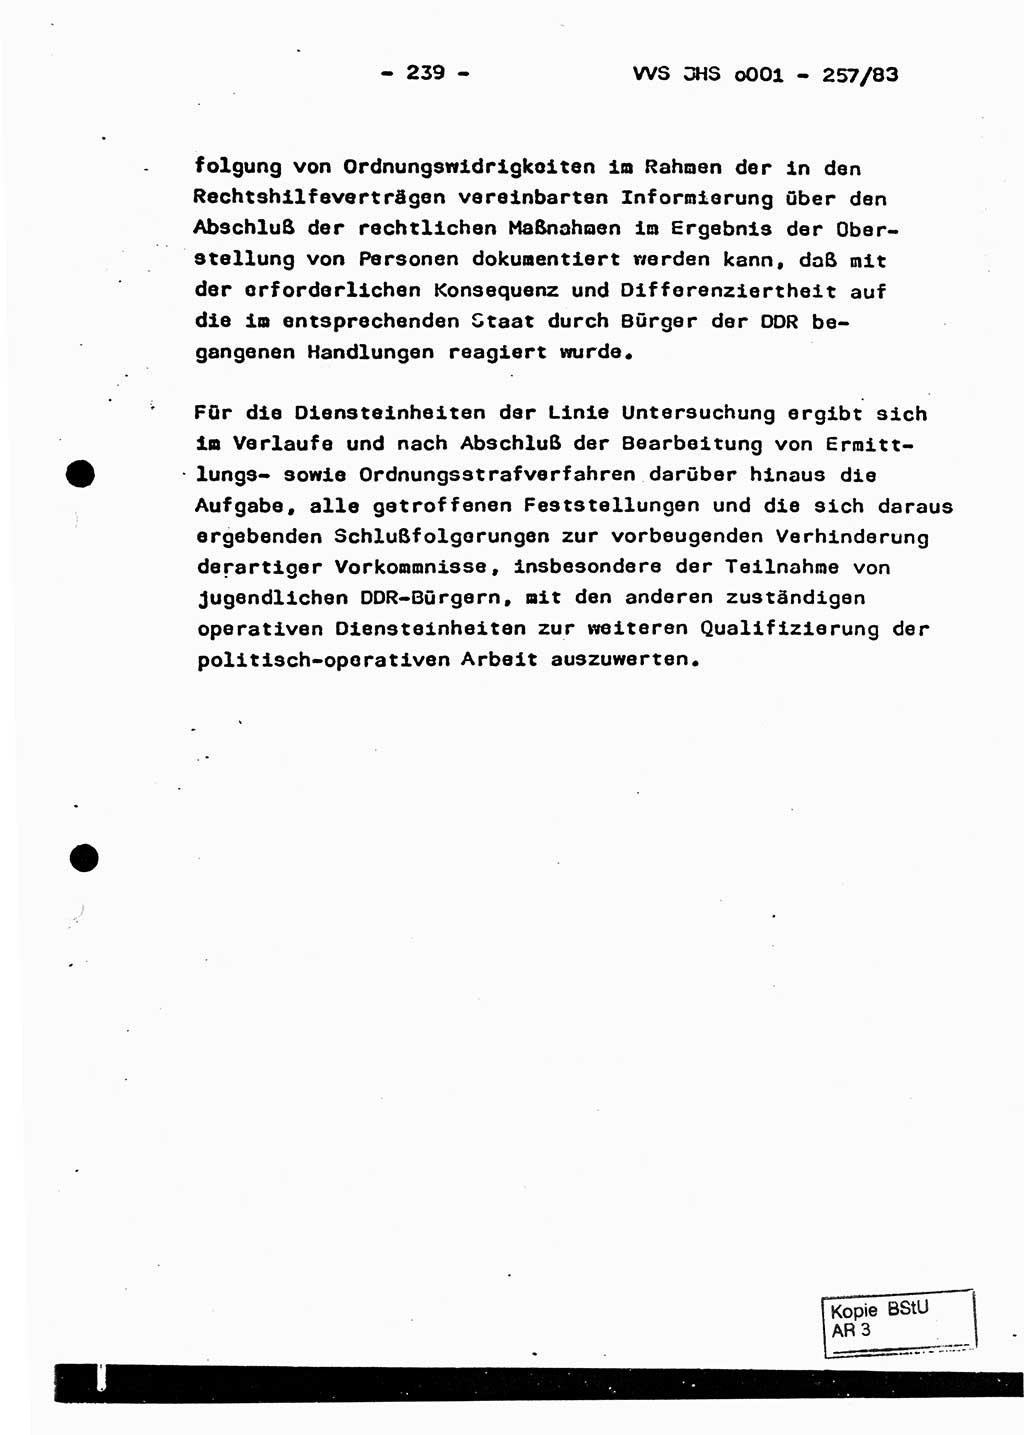 Dissertation, Oberst Helmut Lubas (BV Mdg.), Oberstleutnant Manfred Eschberger (HA IX), Oberleutnant Hans-Jürgen Ludwig (JHS), Ministerium für Staatssicherheit (MfS) [Deutsche Demokratische Republik (DDR)], Juristische Hochschule (JHS), Vertrauliche Verschlußsache (VVS) o001-257/83, Potsdam 1983, Seite 239 (Diss. MfS DDR JHS VVS o001-257/83 1983, S. 239)